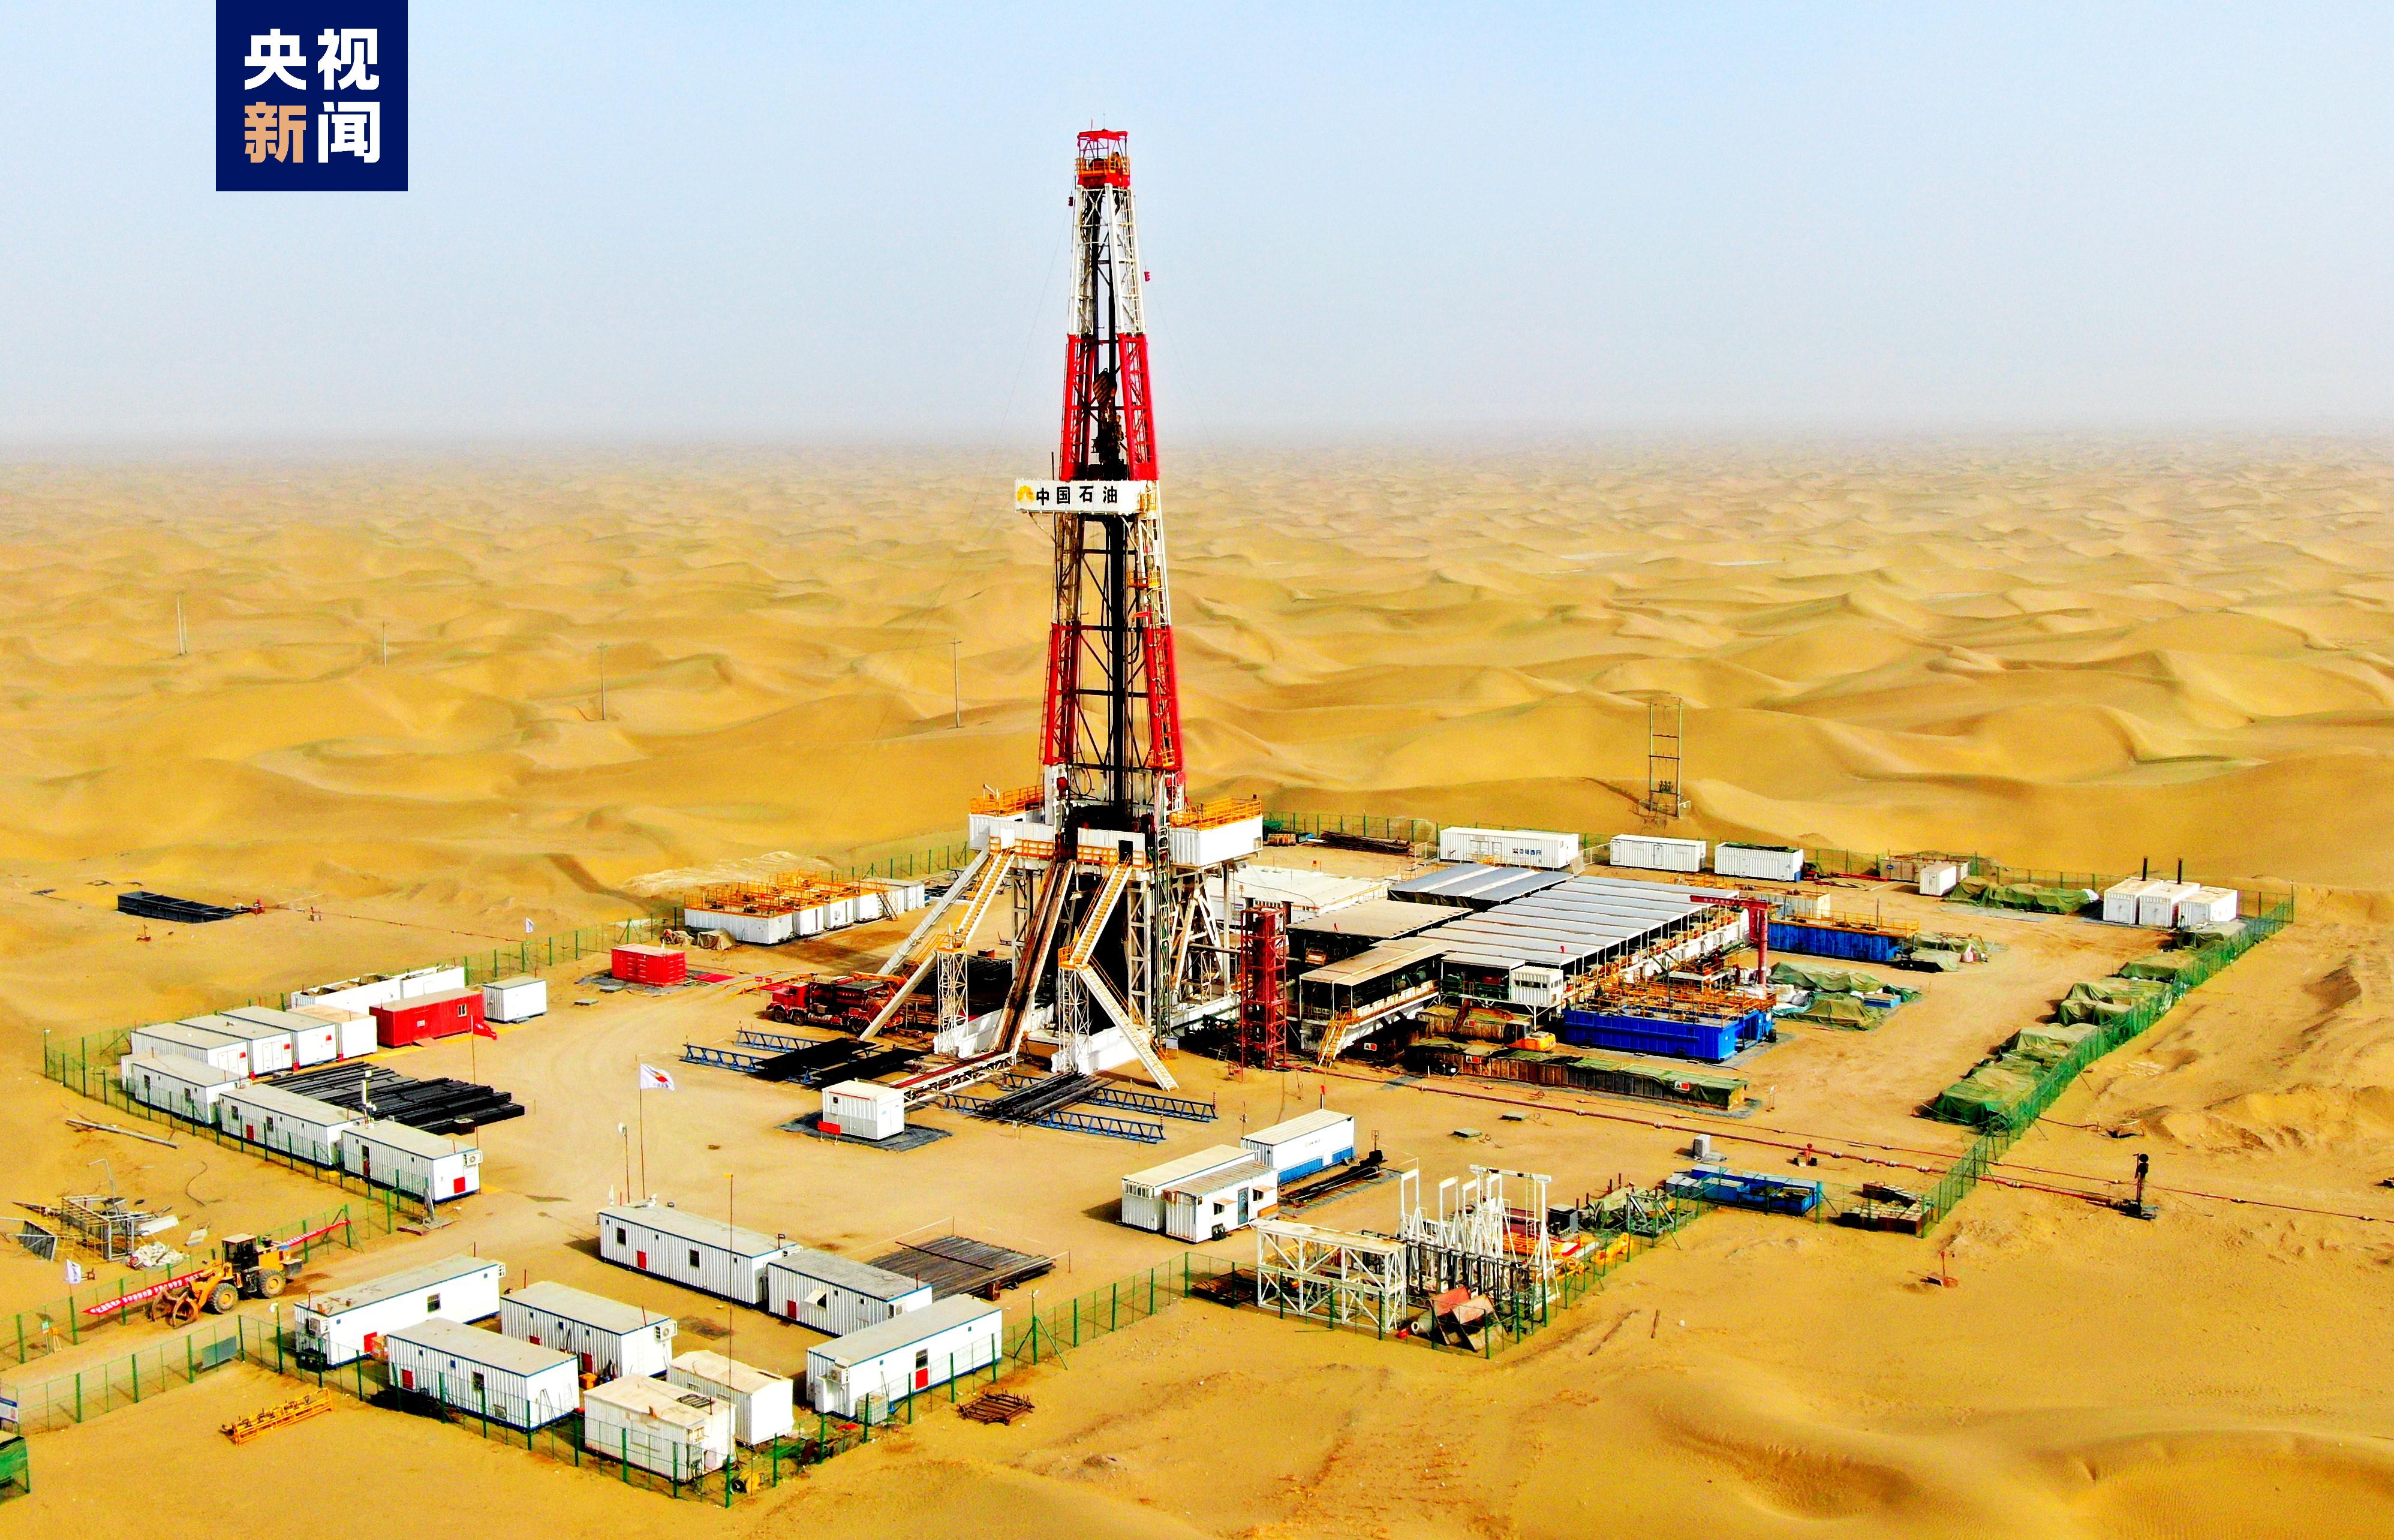 果勒3c井位于新疆沙雅县境内,是我国最大超深油田——富满油田,向超深